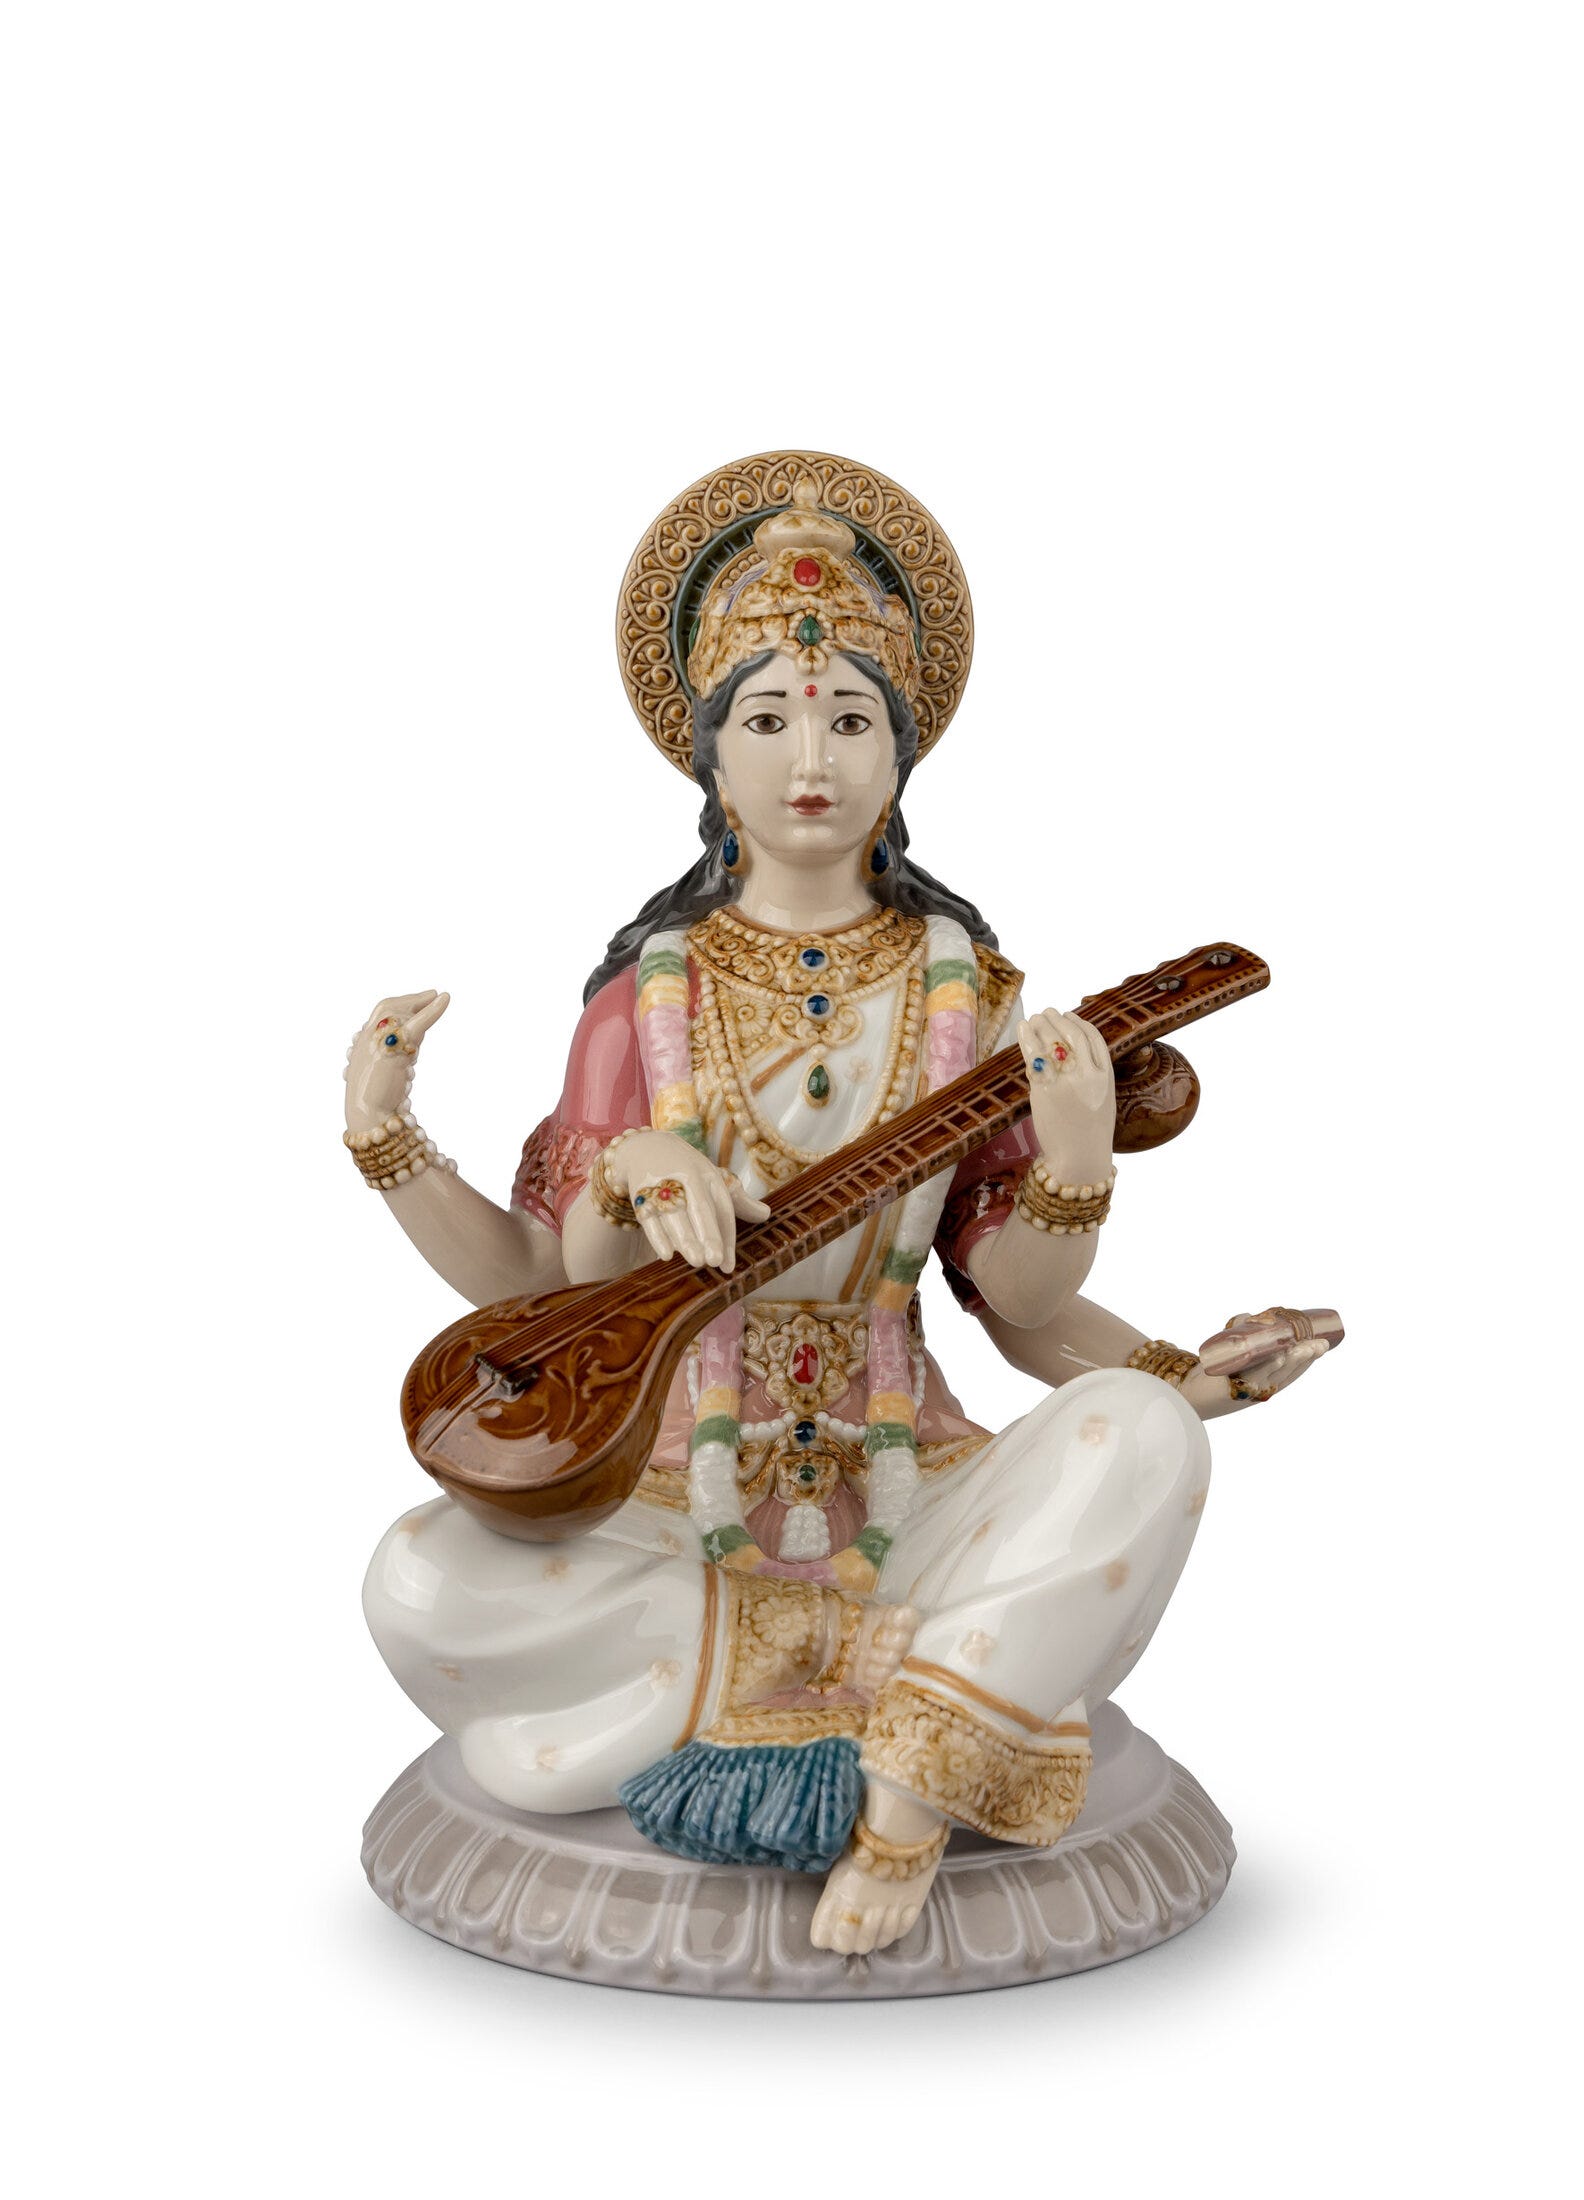 Figurina della dea Saraswati